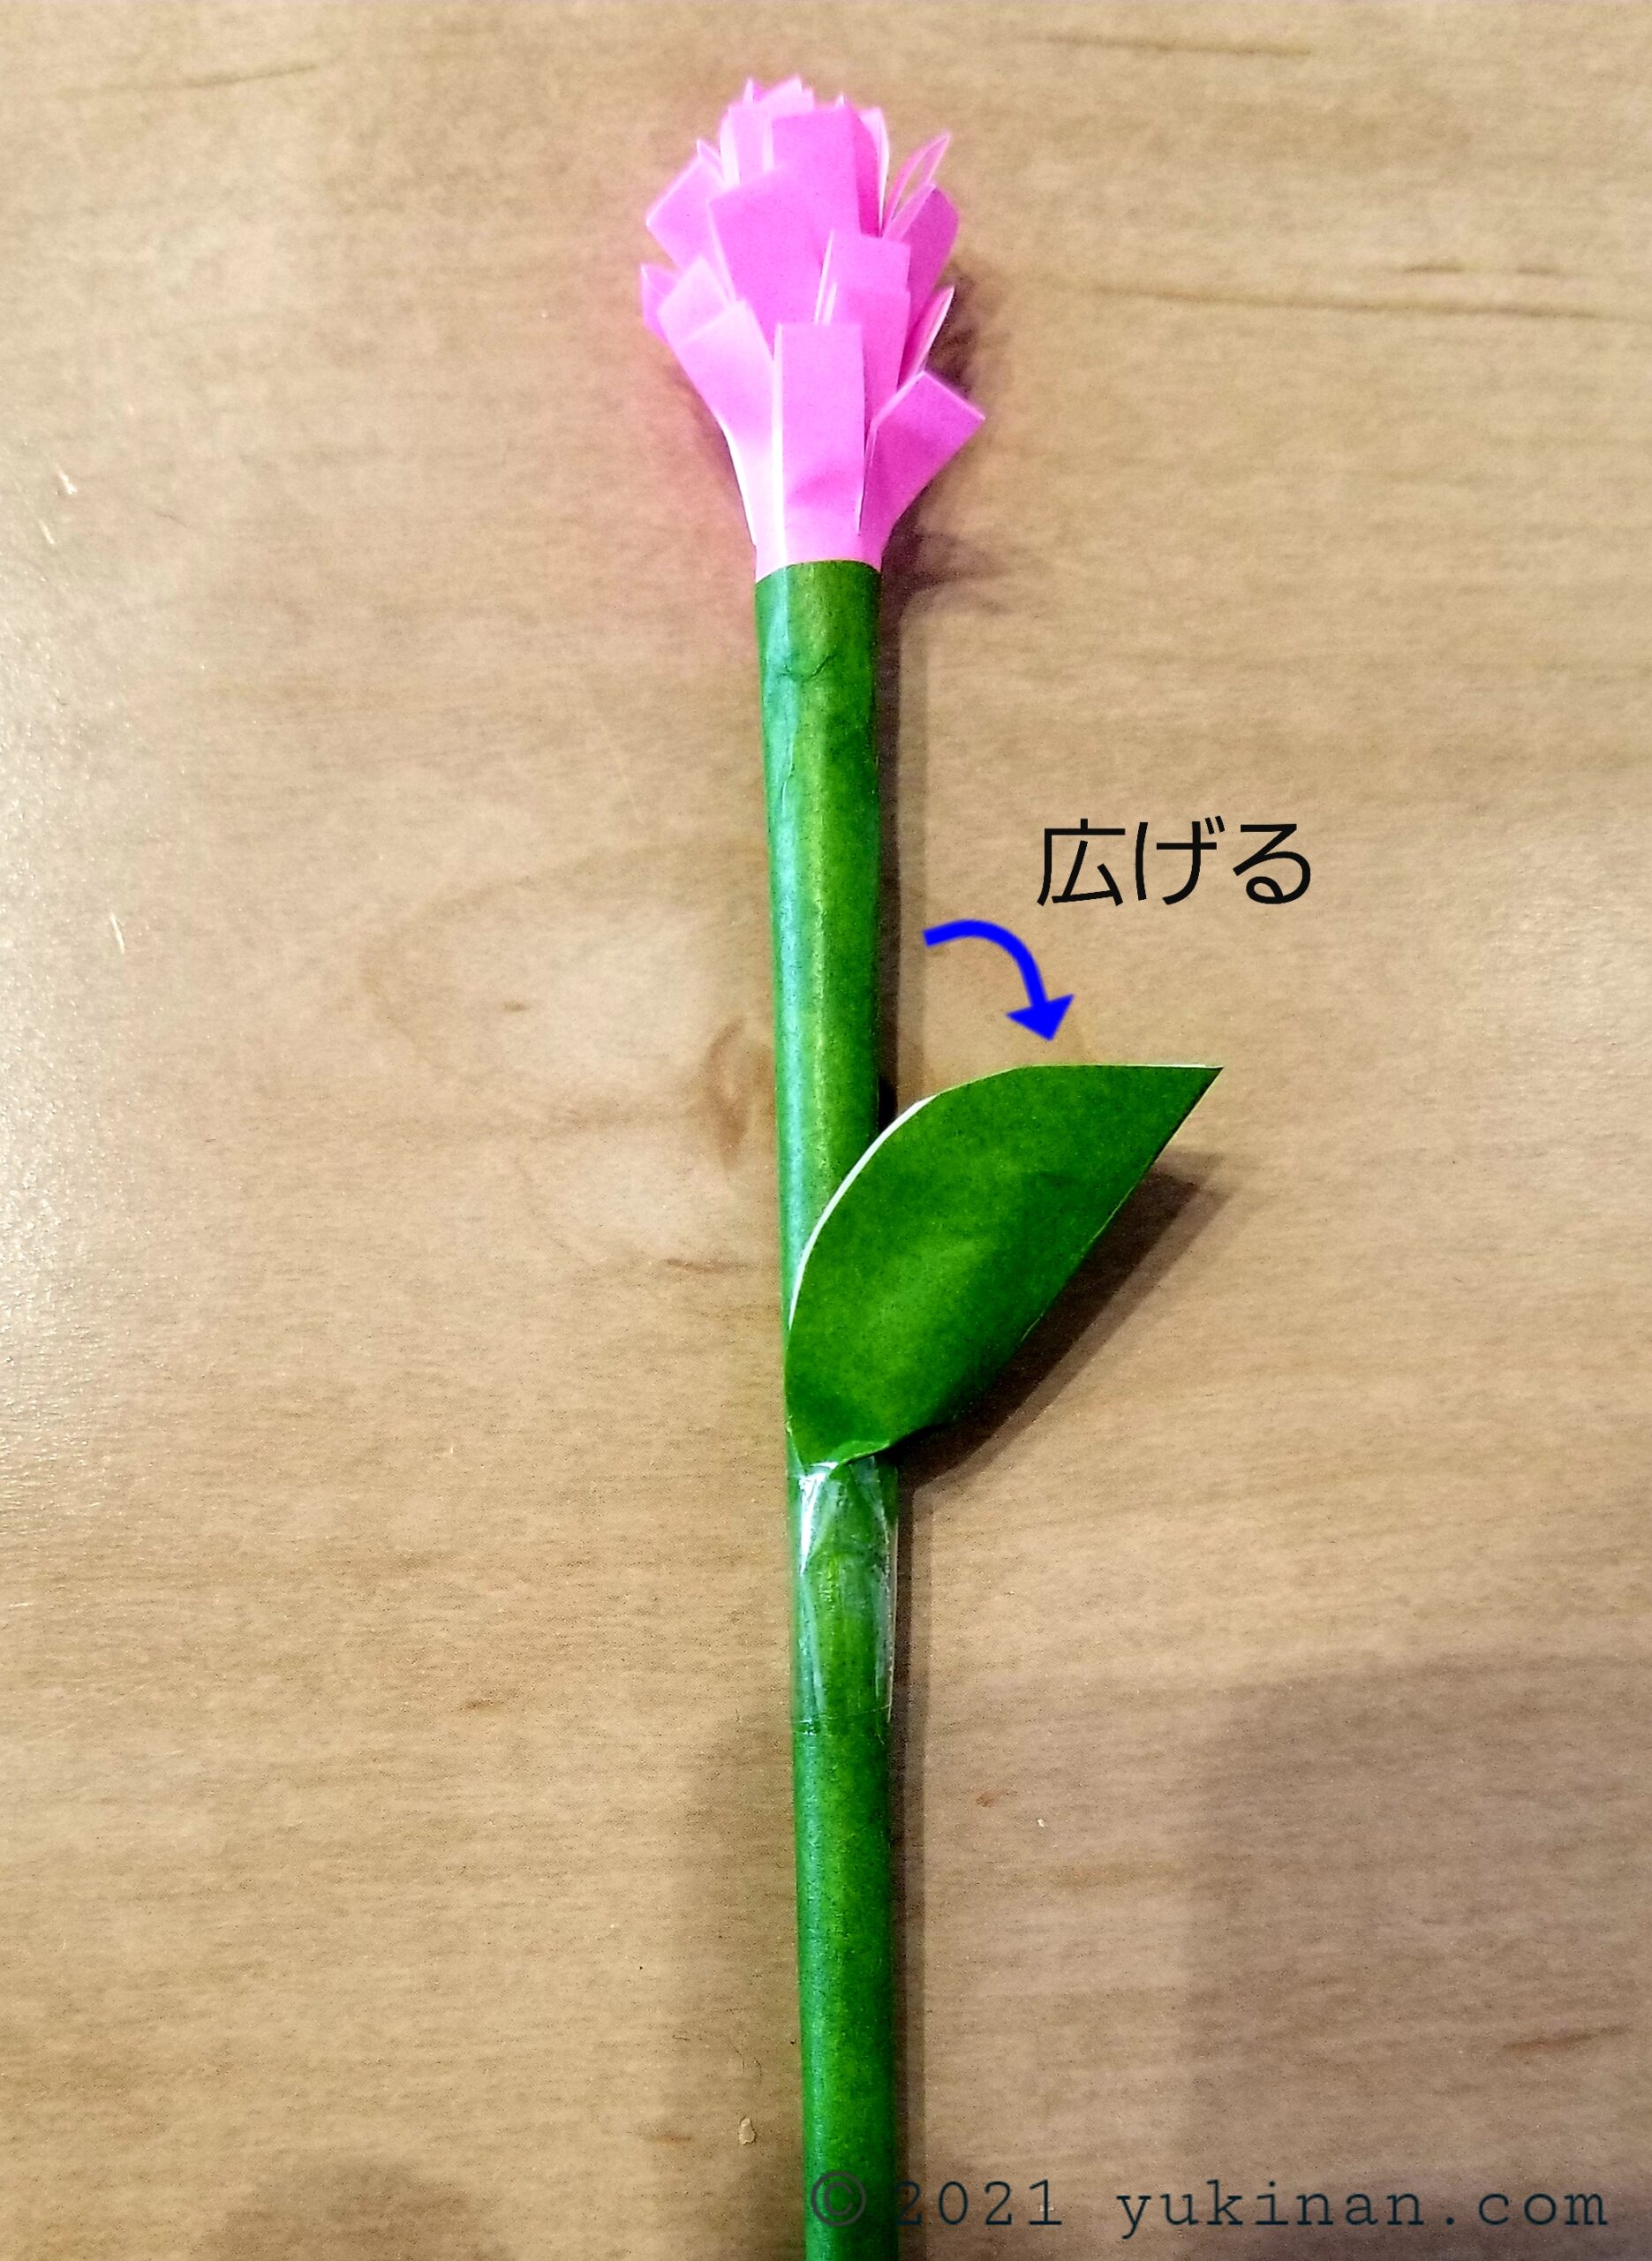 お花の作り方 折り紙で簡単に子供でもできるおしゃれで可愛い立体花束を作ろう 三児ママの楽しい子育てdiy